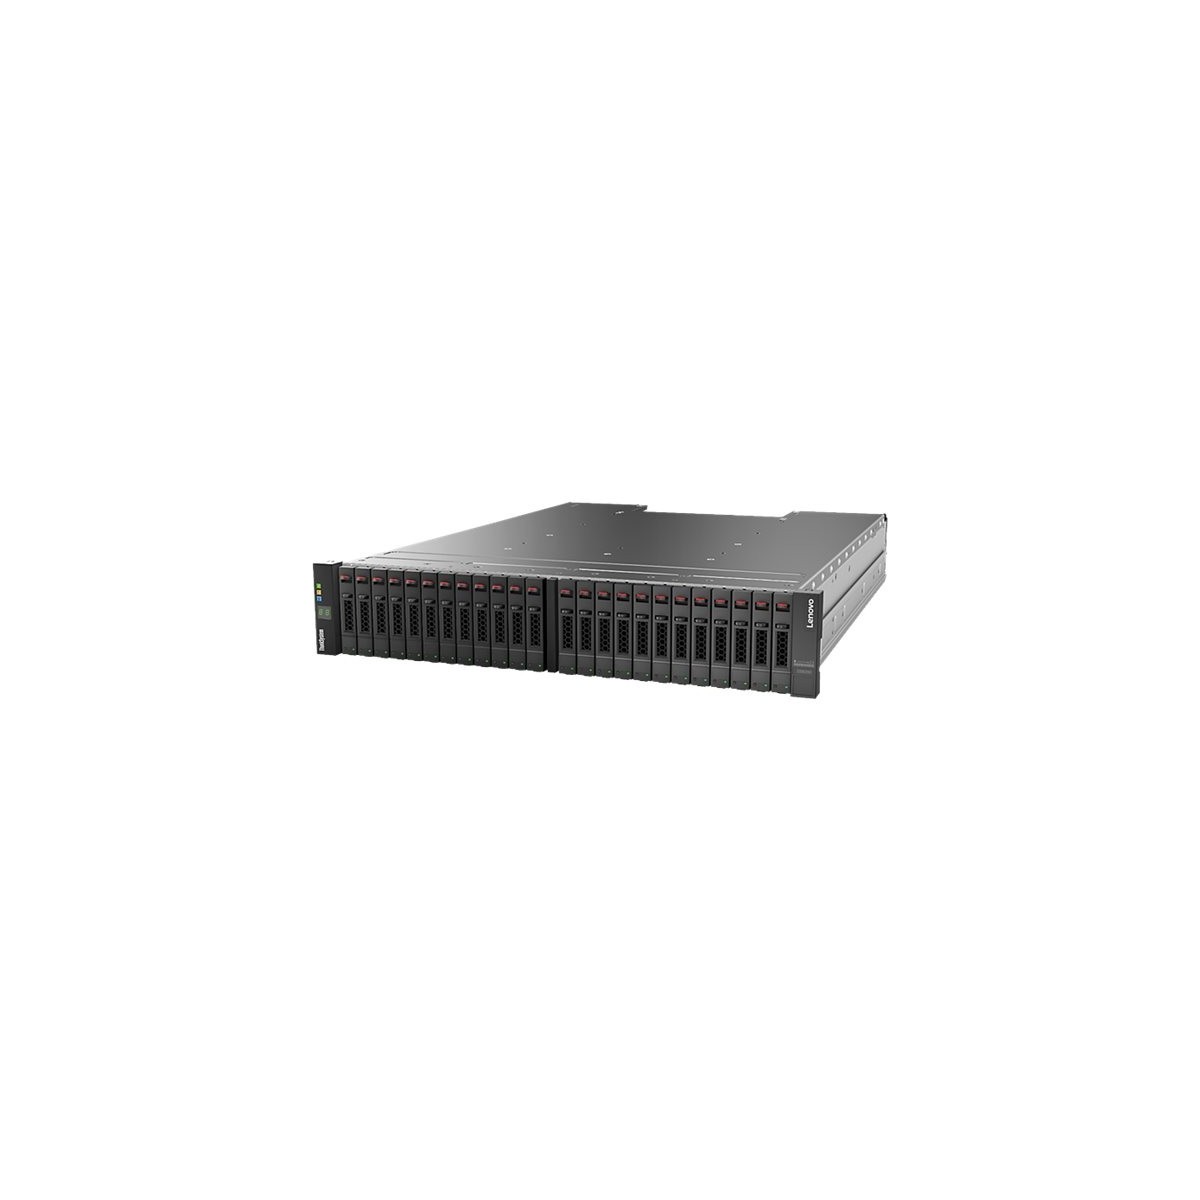 Lenovo ThinkSystem D S220 - Festplatten-Array - Storage server - NAS